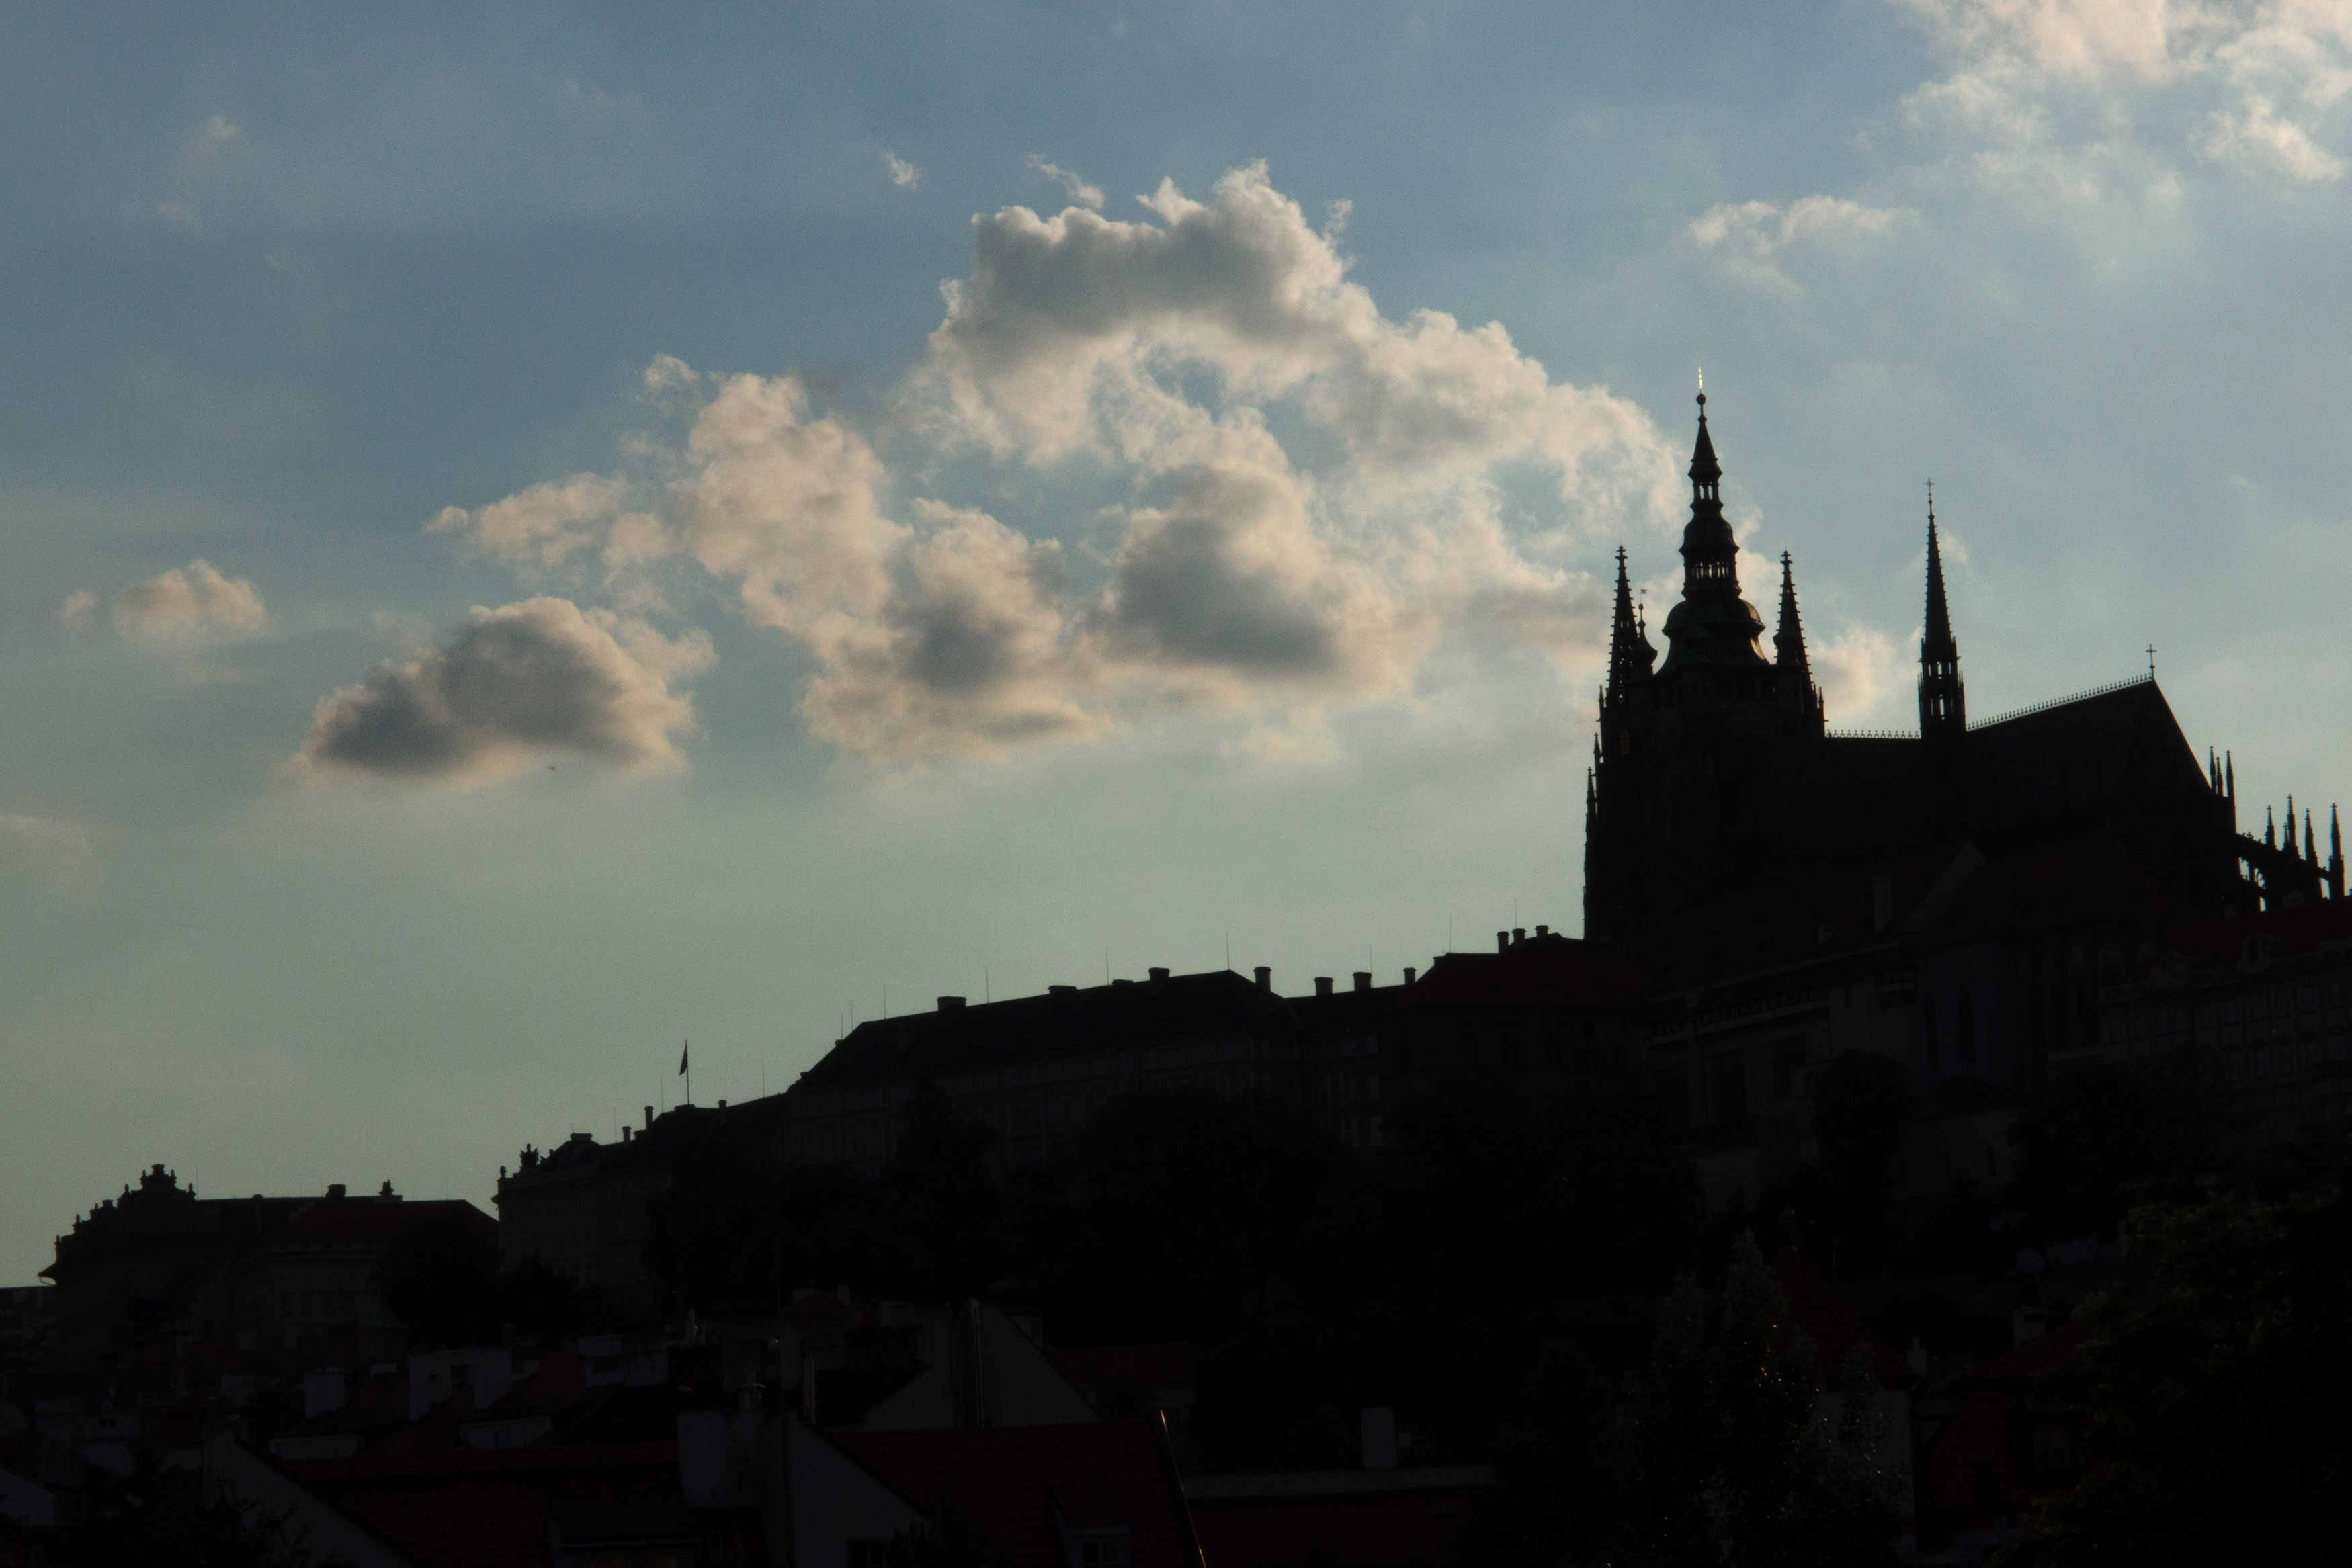 プラハ城のシルエット 無料のストックフォト Libreshot